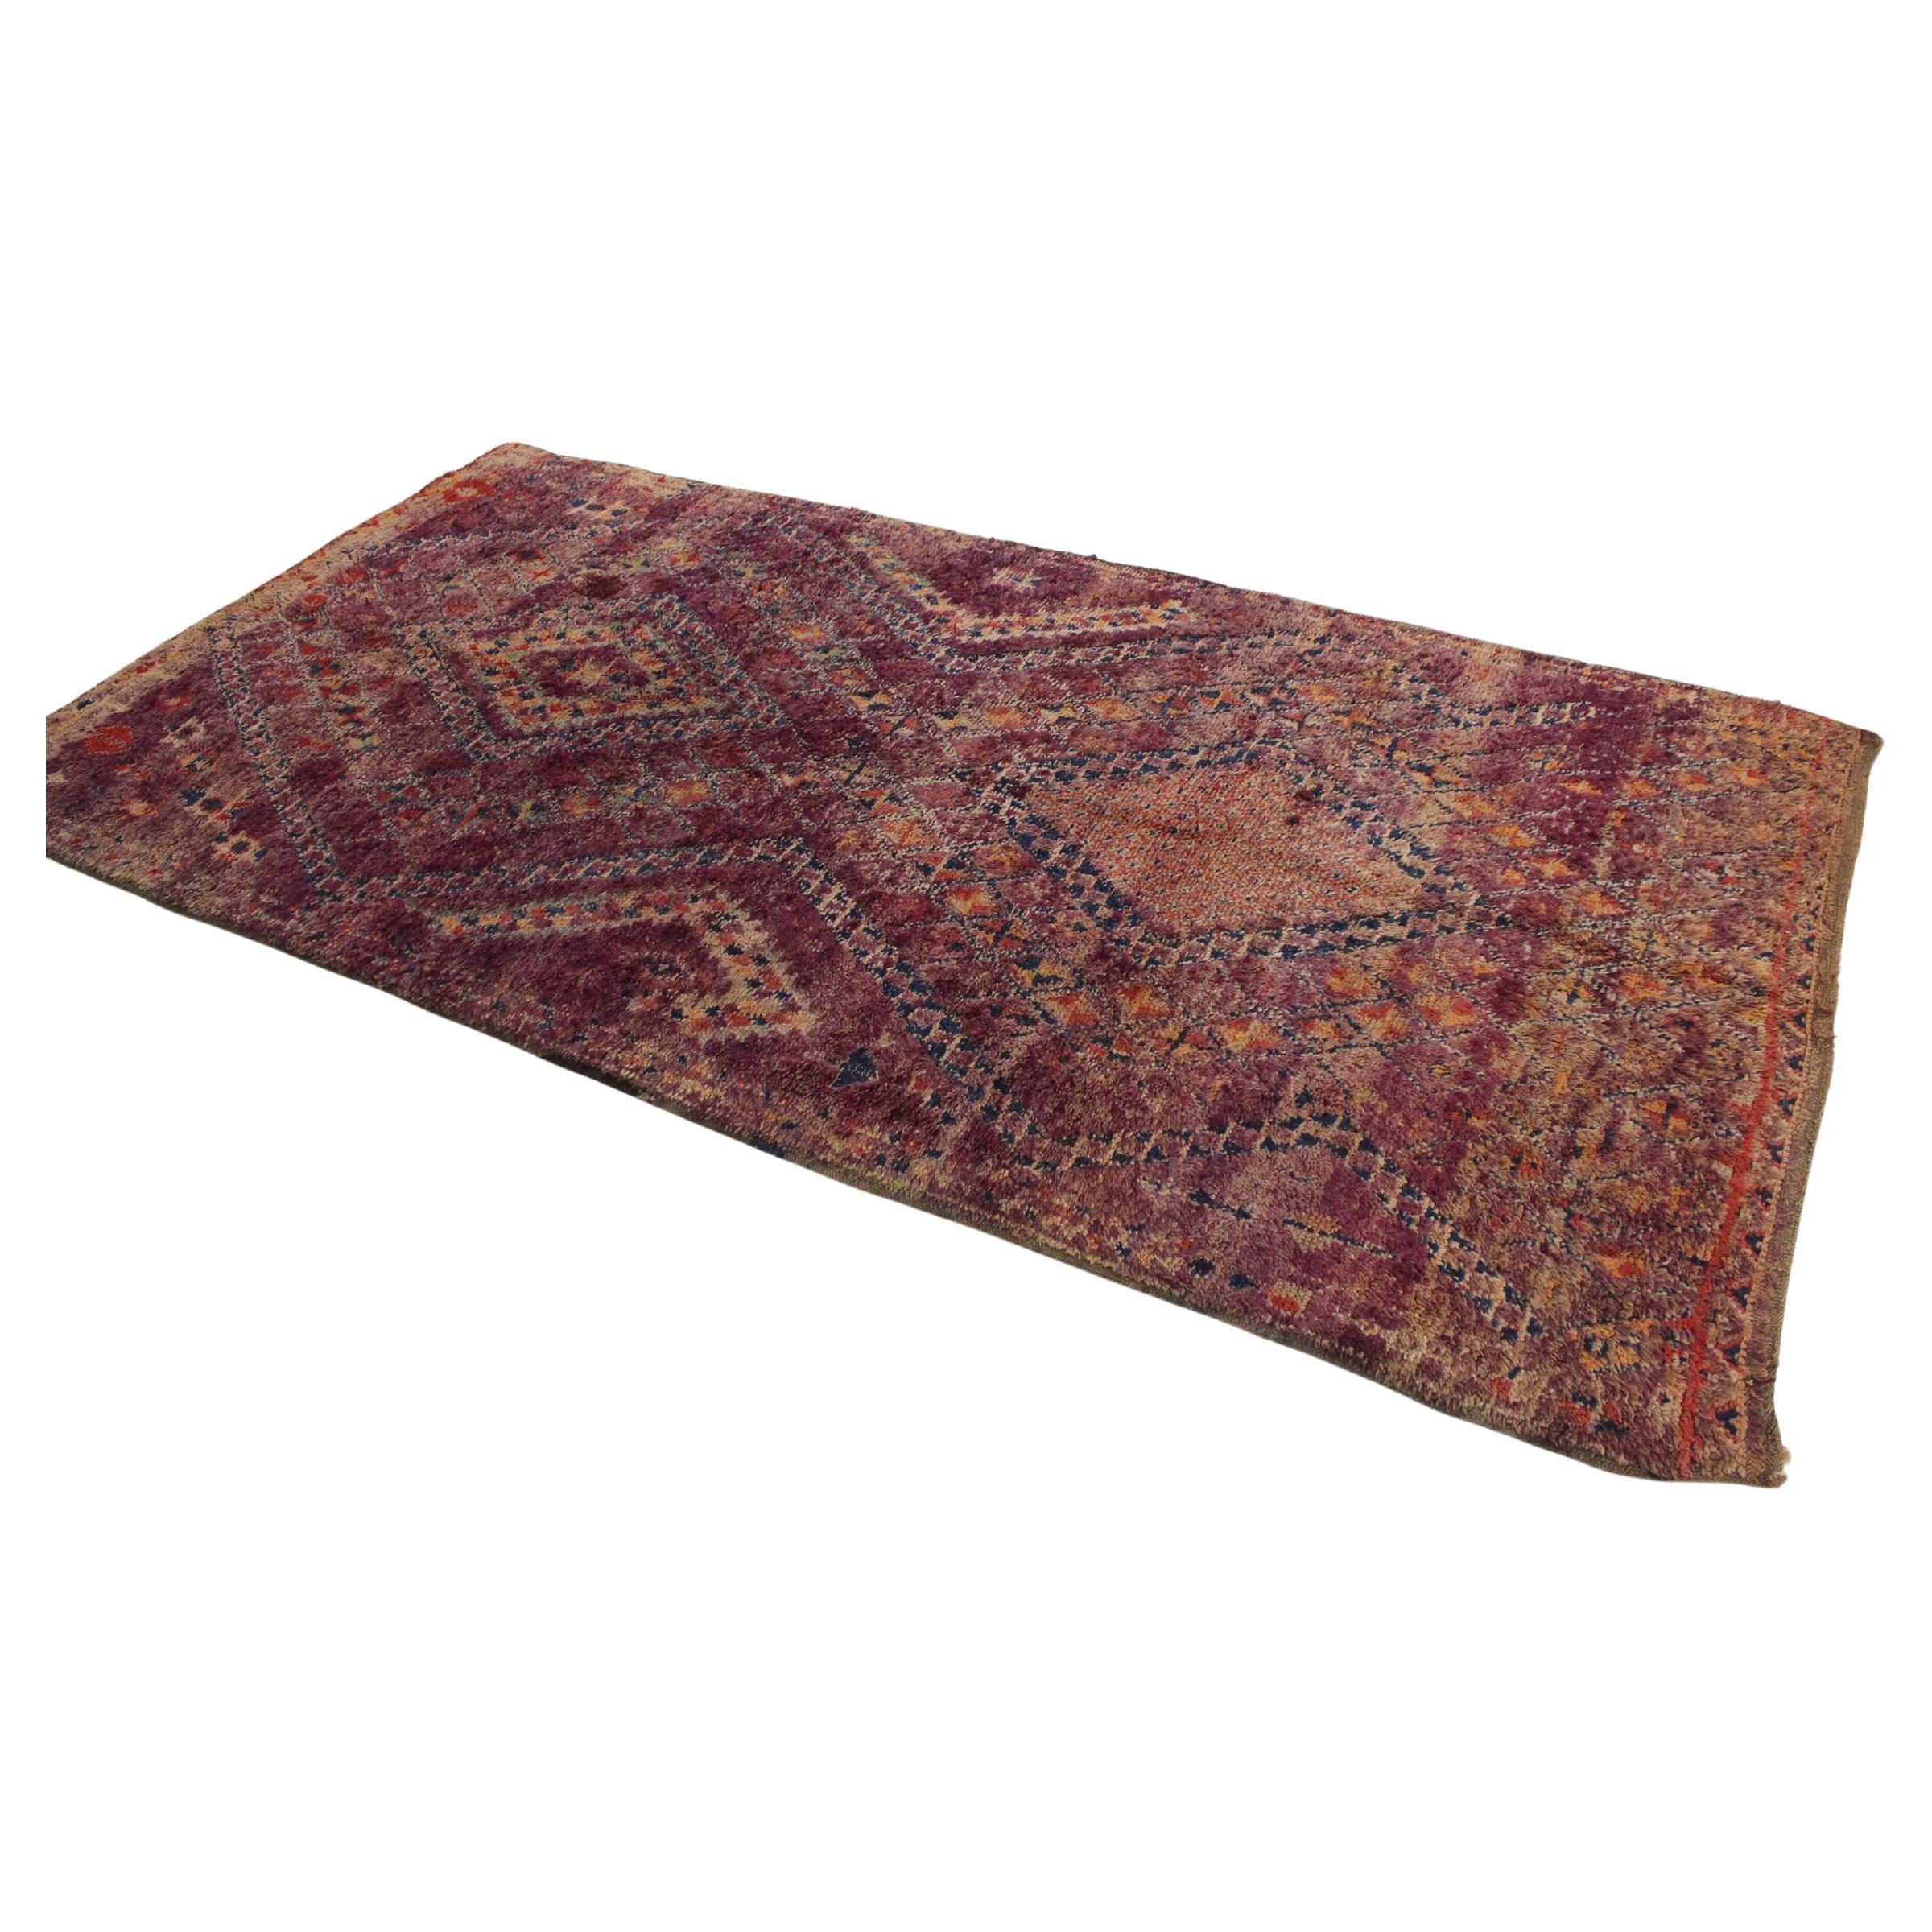 Marokkanischer Beni Mguild-Teppich im Vintage-Stil - Lila - 6.1x12feet / 187x368cm